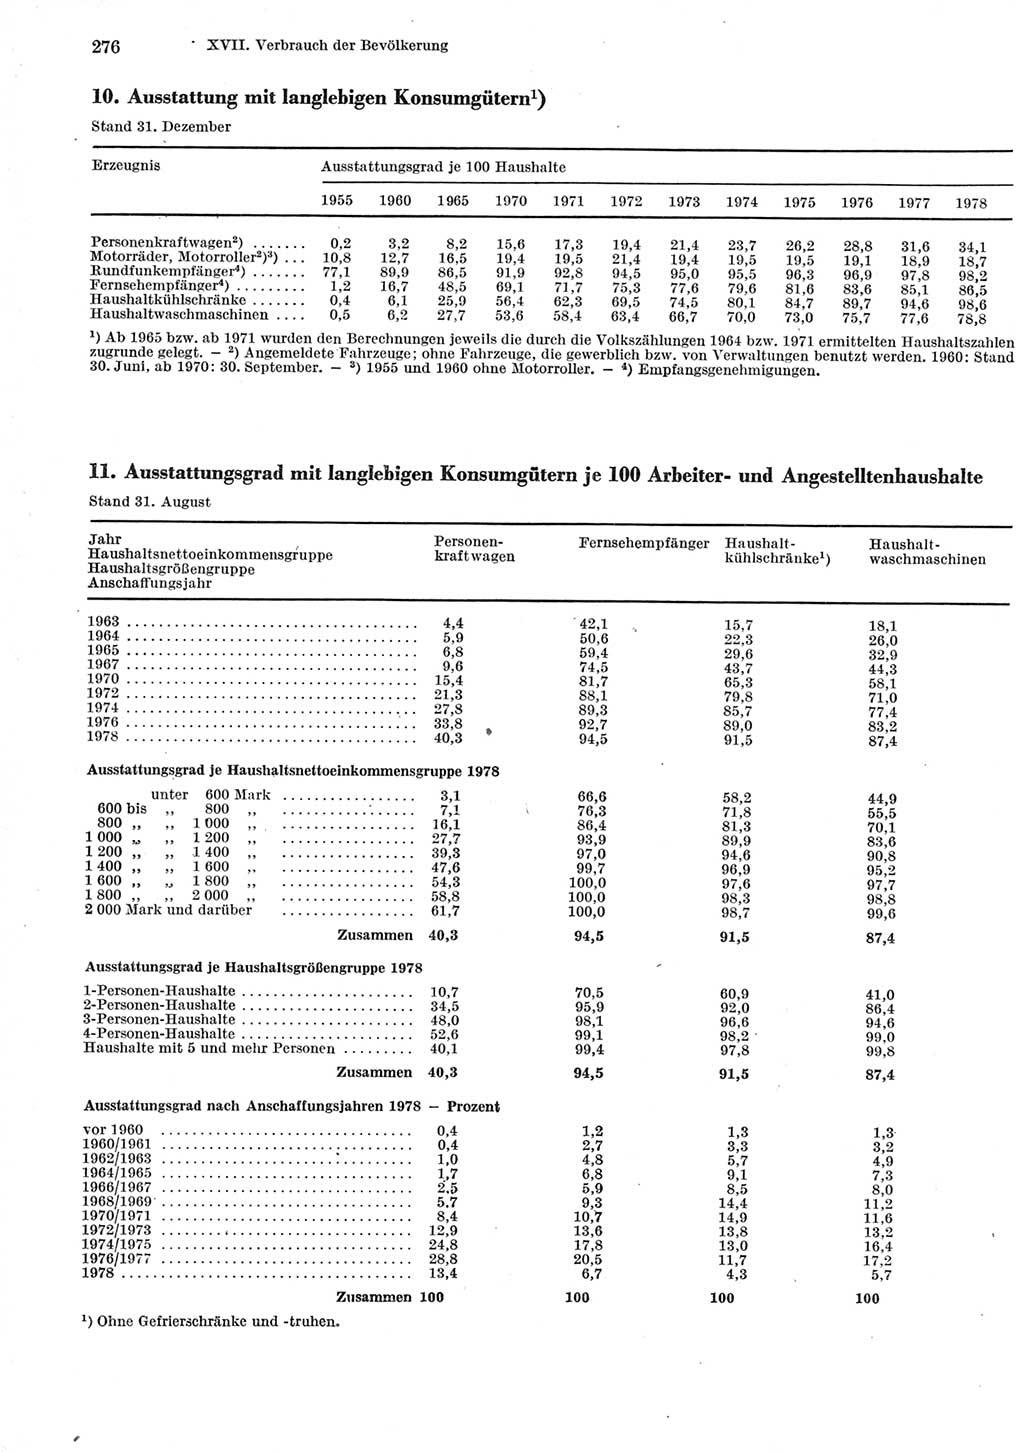 Statistisches Jahrbuch der Deutschen Demokratischen Republik (DDR) 1979, Seite 276 (Stat. Jb. DDR 1979, S. 276)